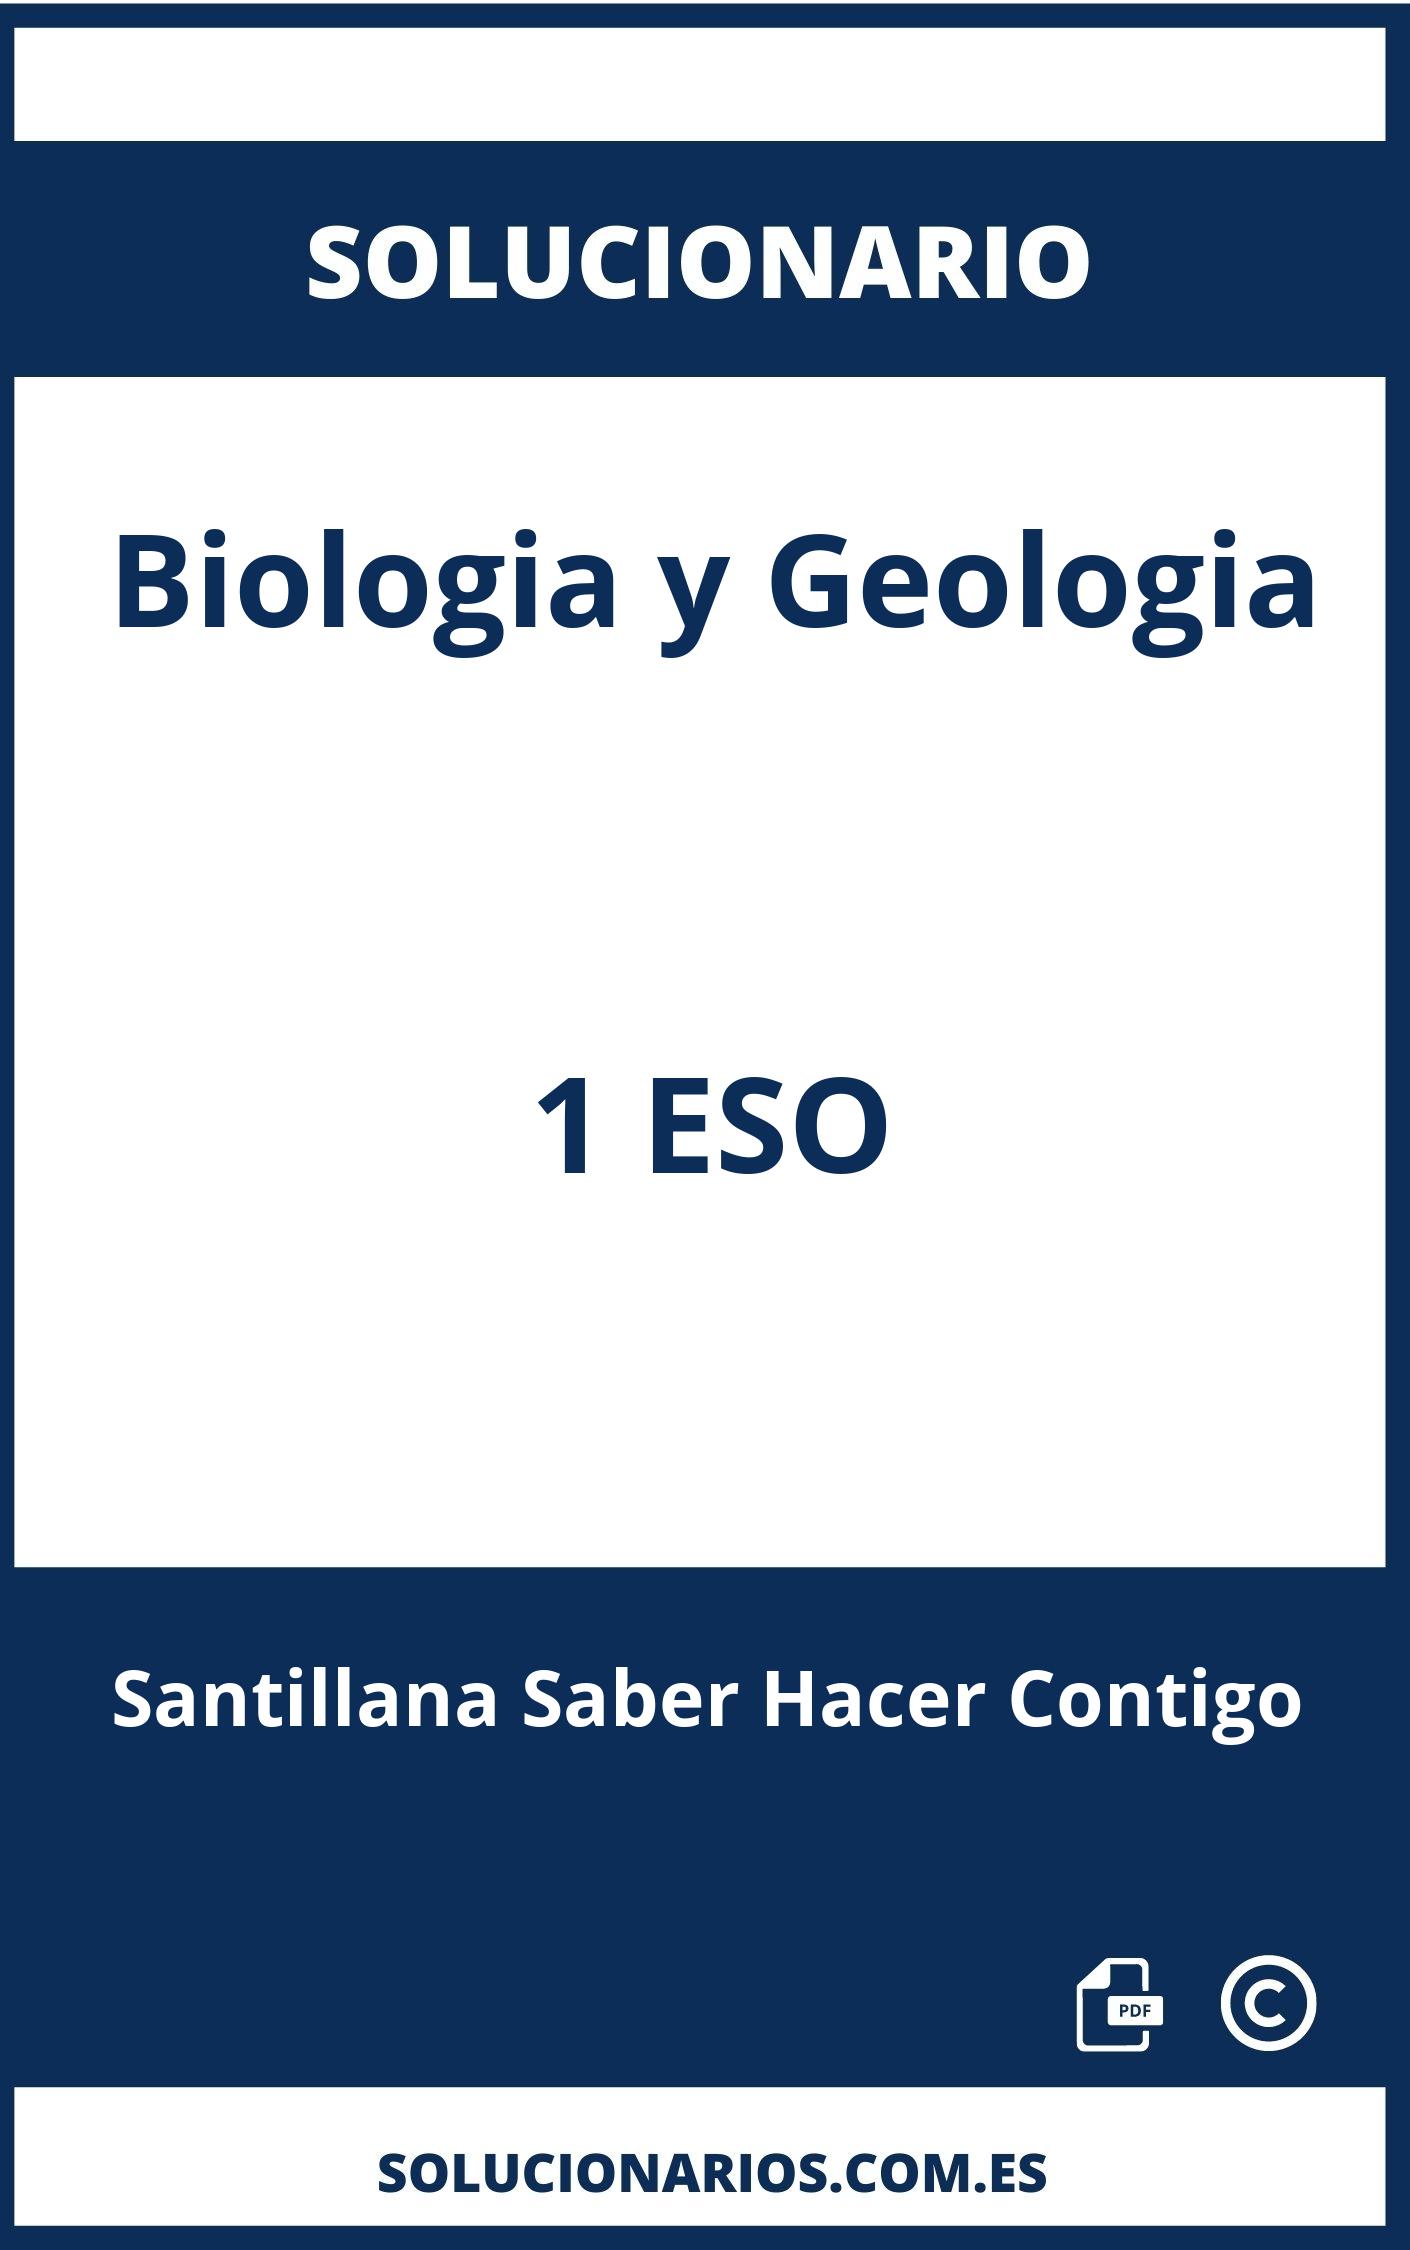 Solucionario Biologia y Geologia 1 ESO Santillana Saber Hacer Contigo